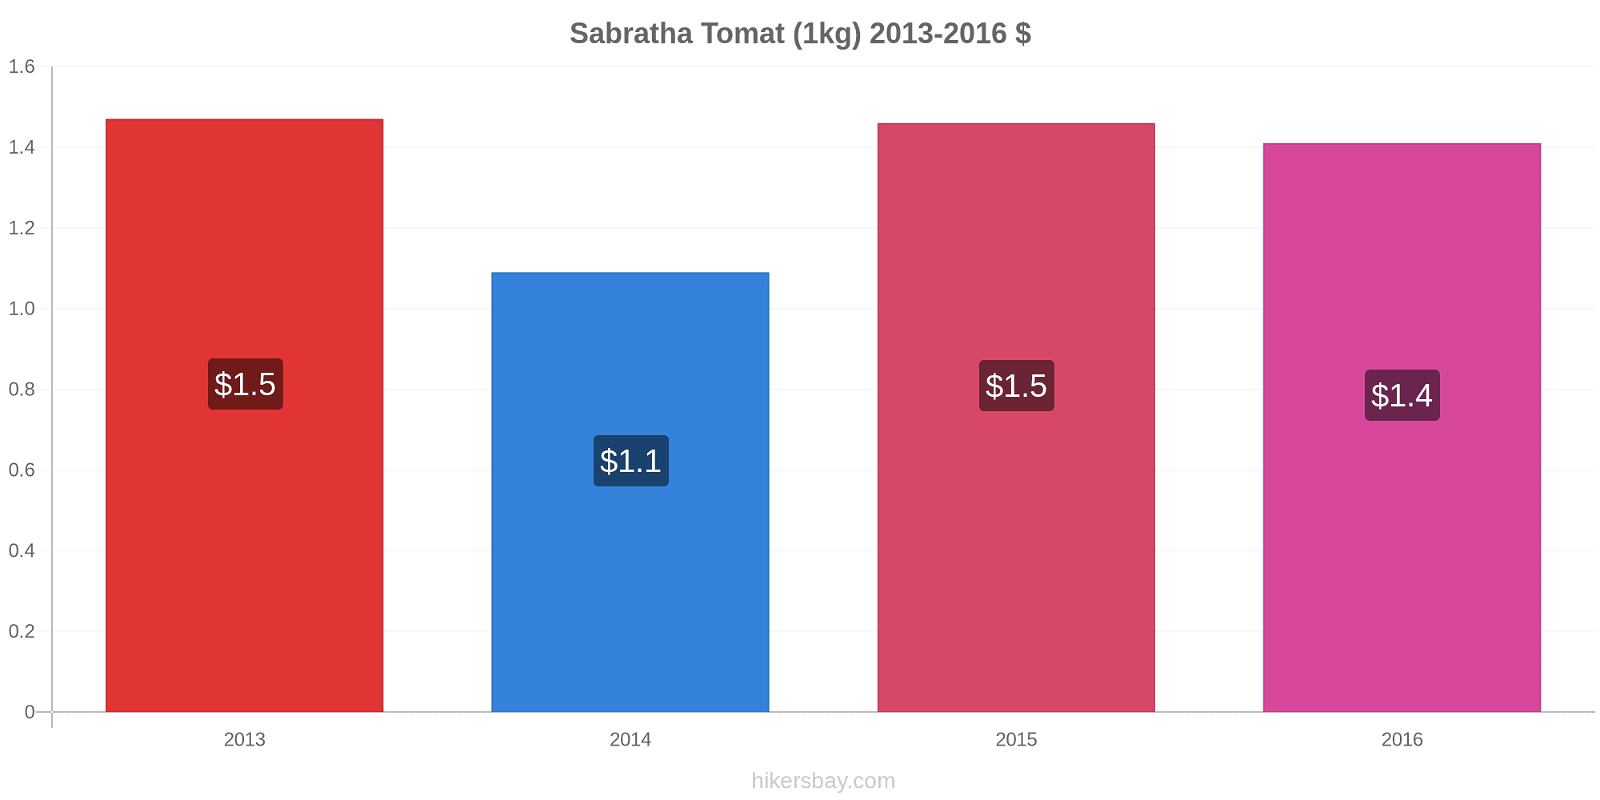 Sabratha prisændringer Tomat (1kg) hikersbay.com